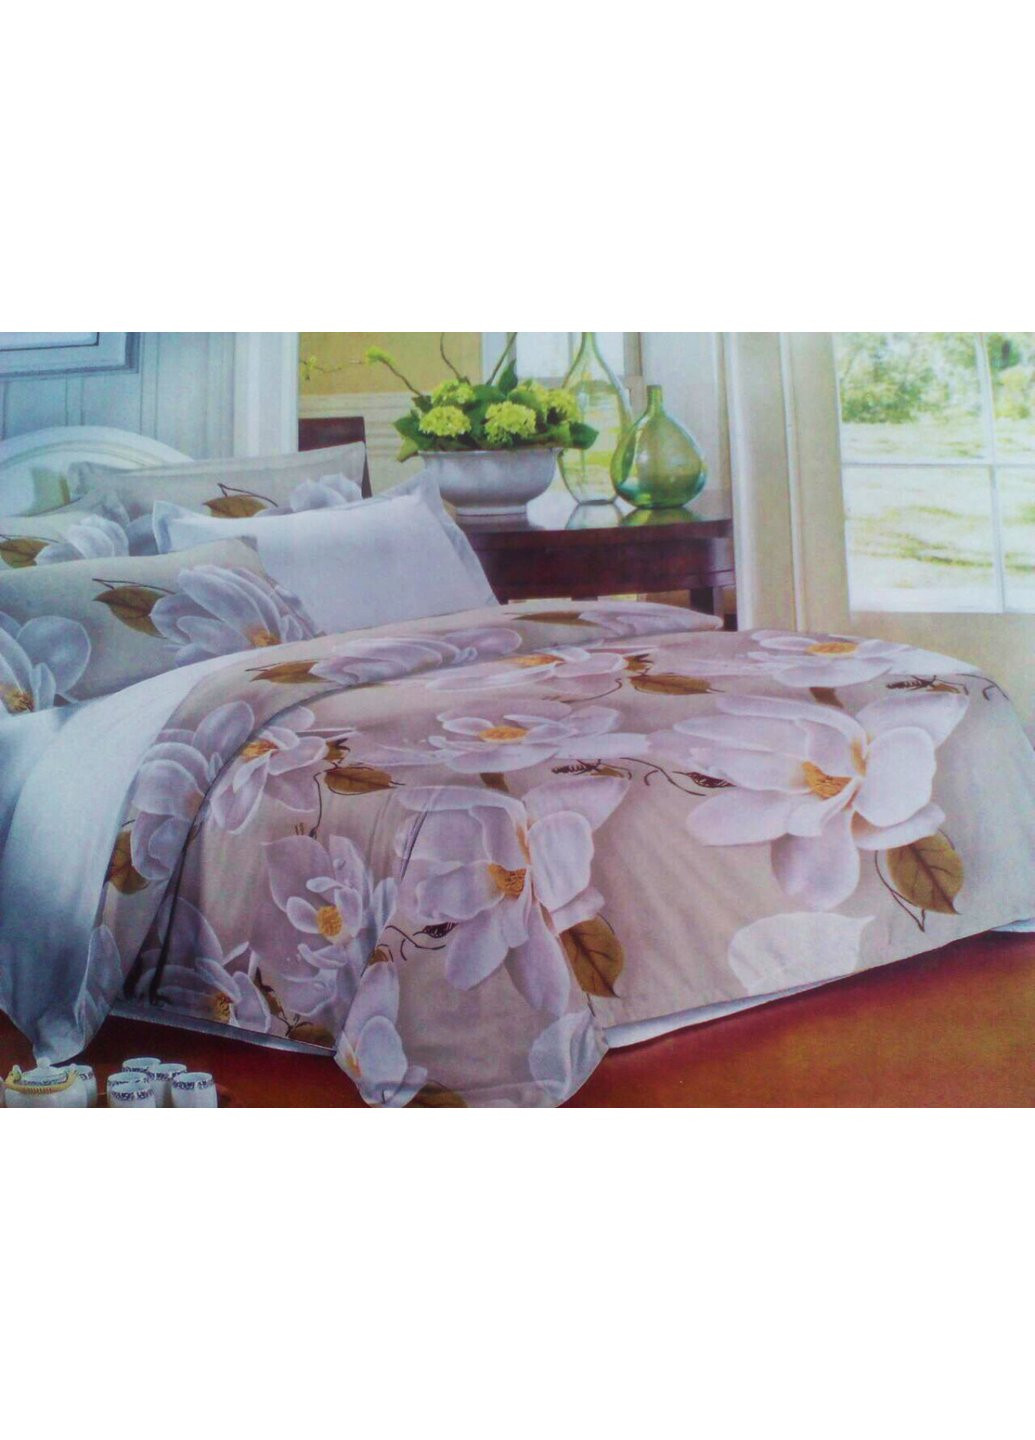 Комплект постельного белья от украинского производителя Polycotton Двуспальный 90917 Moda (254861061)